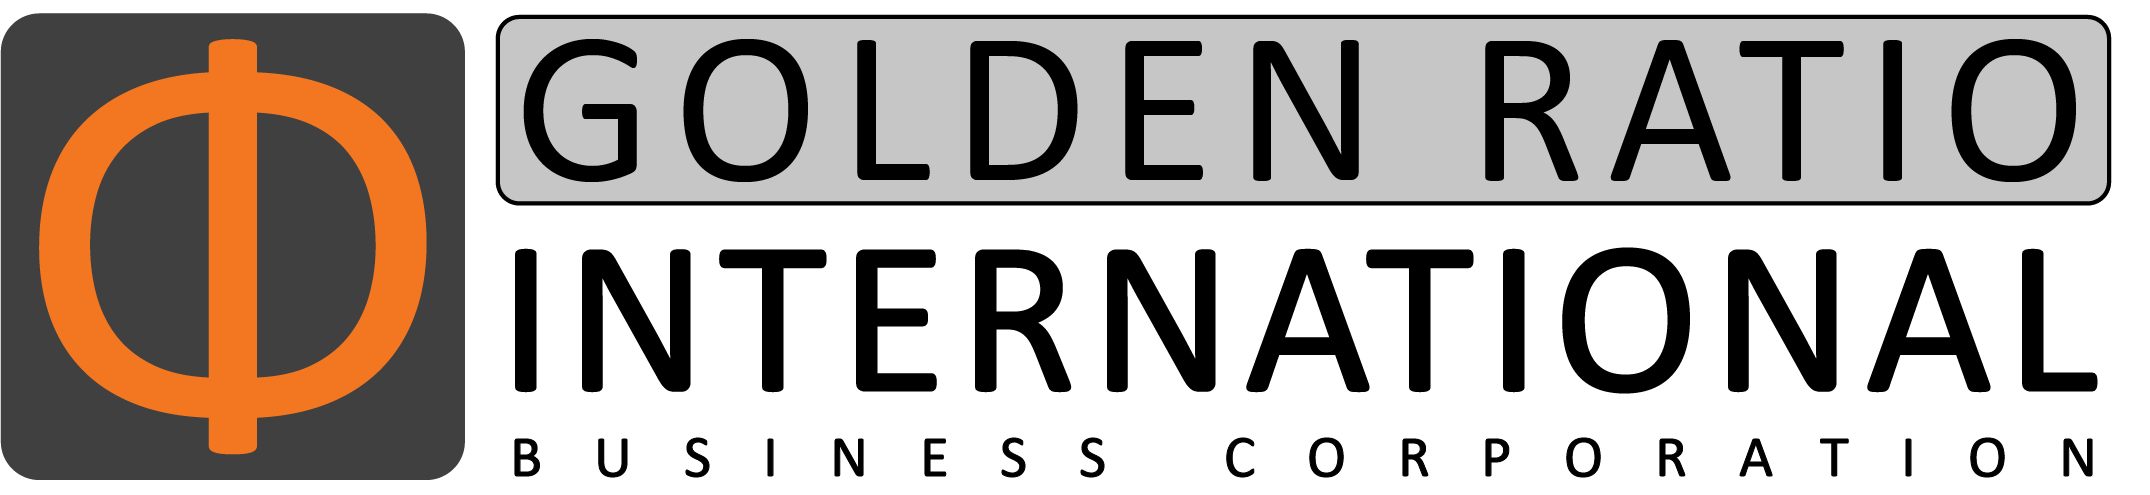 GOLDEN RATIO INTERNATIONAL BUSINESS CORP